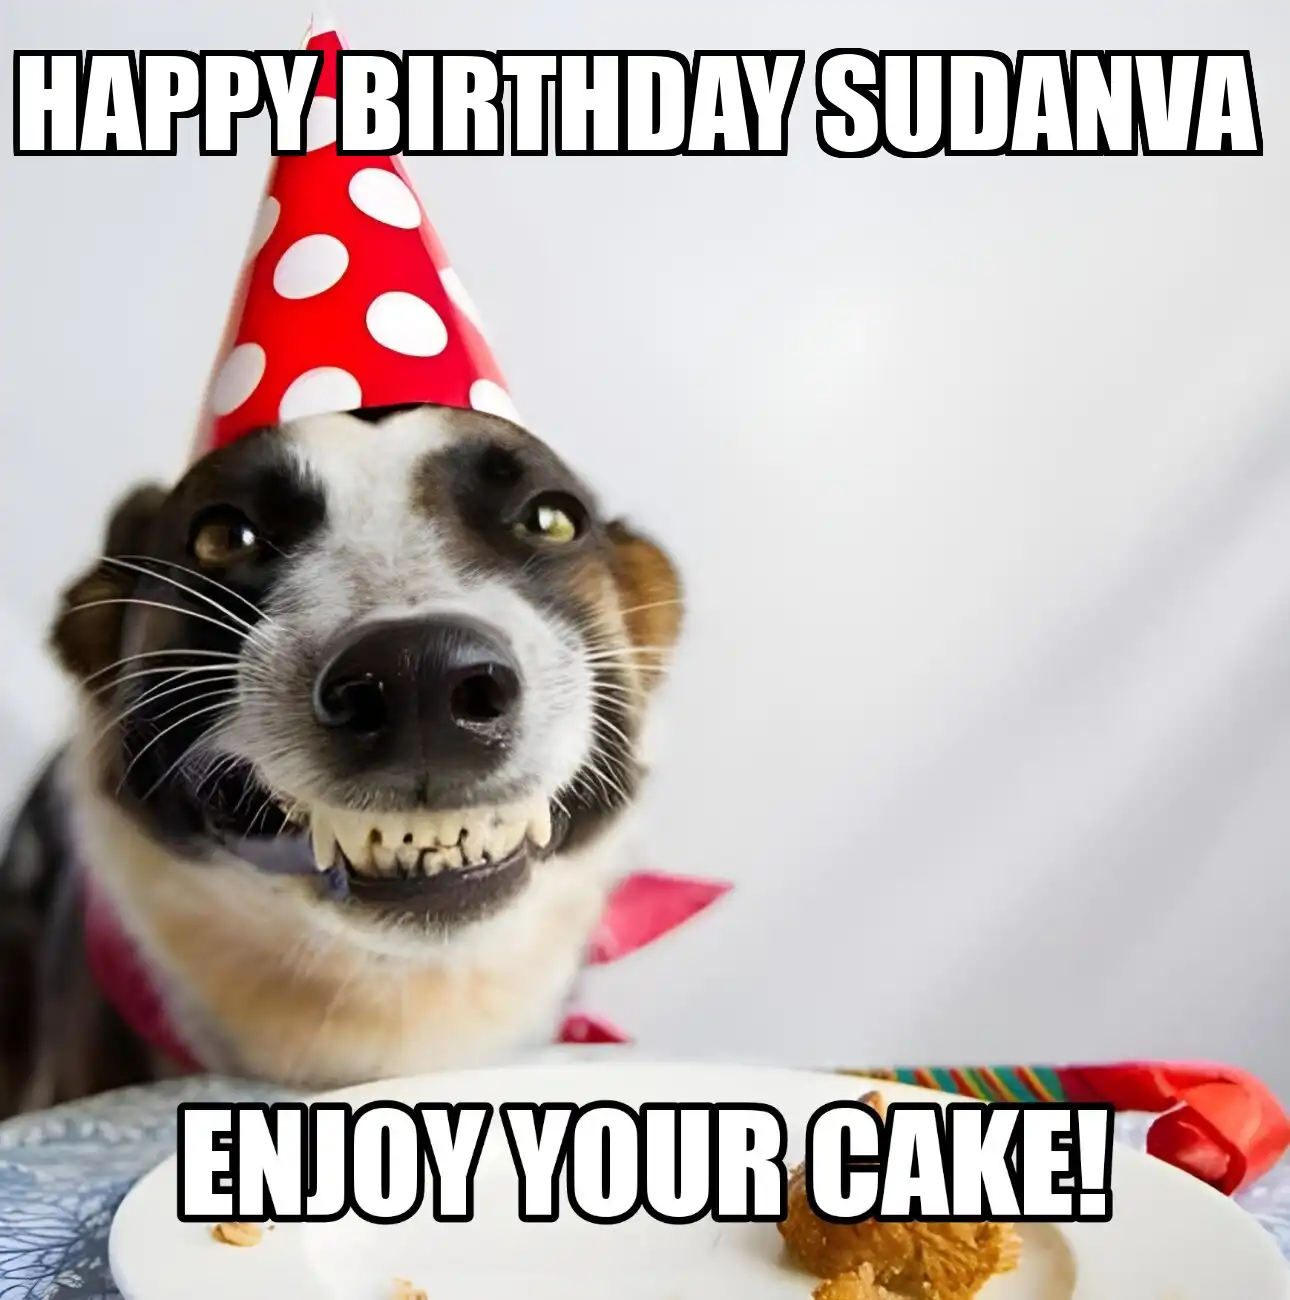 Happy Birthday Sudanva Enjoy Your Cake Dog Meme